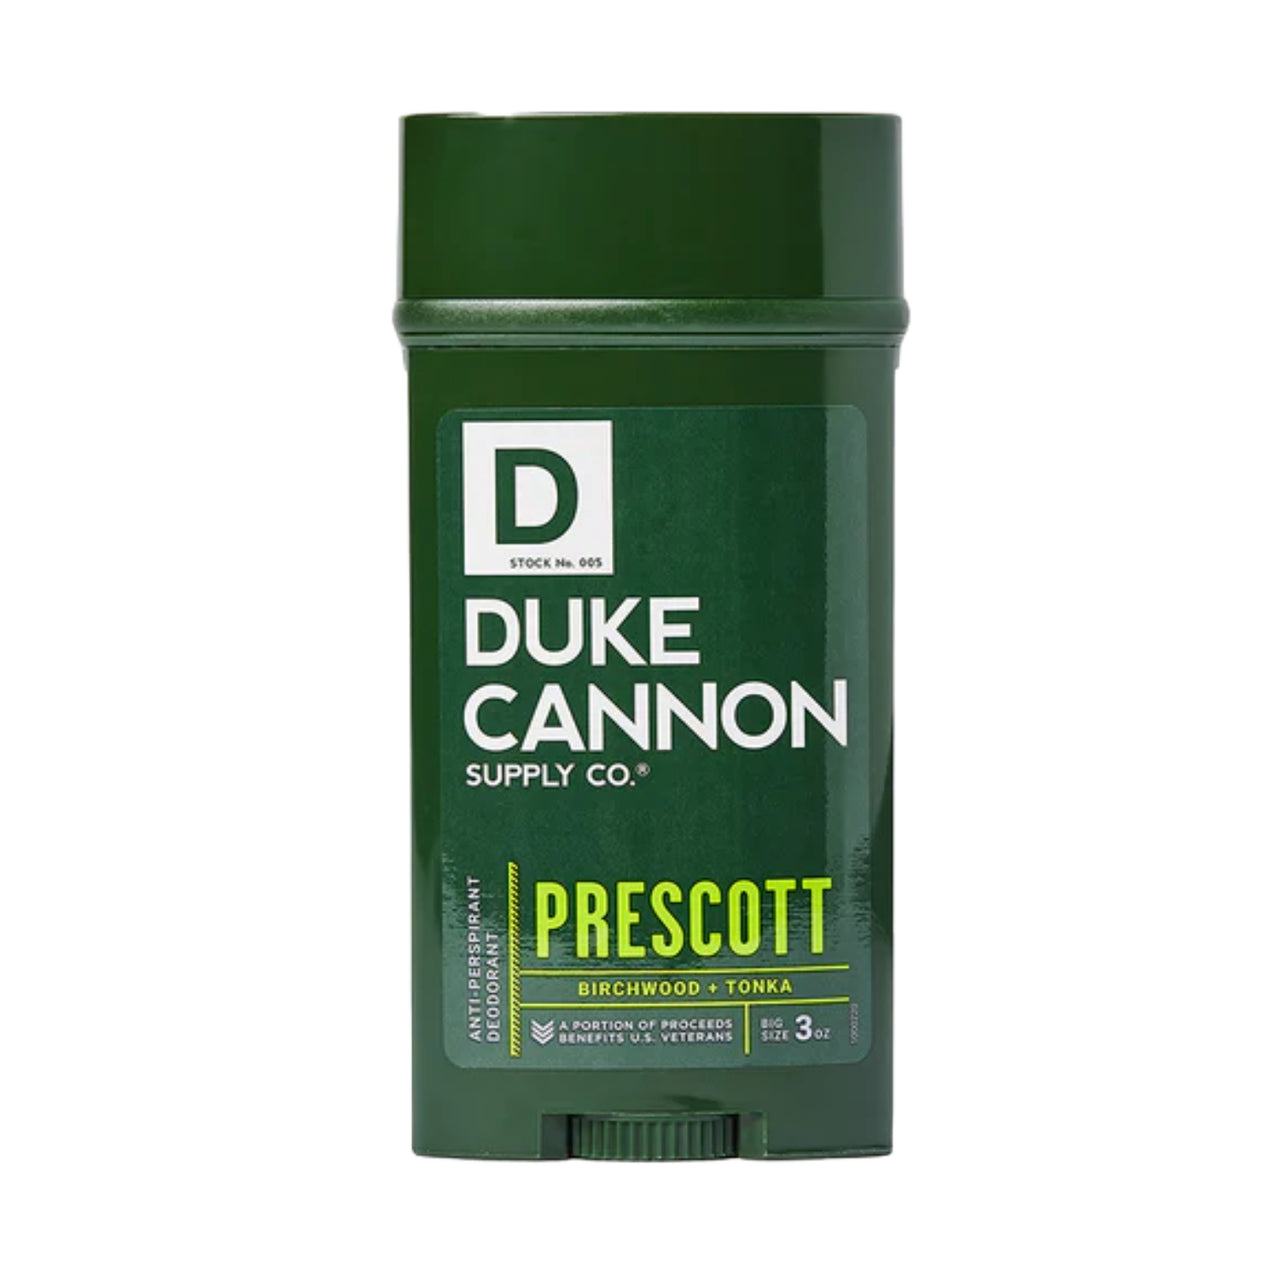 Anti-Perspirant Deodorant | Prescott